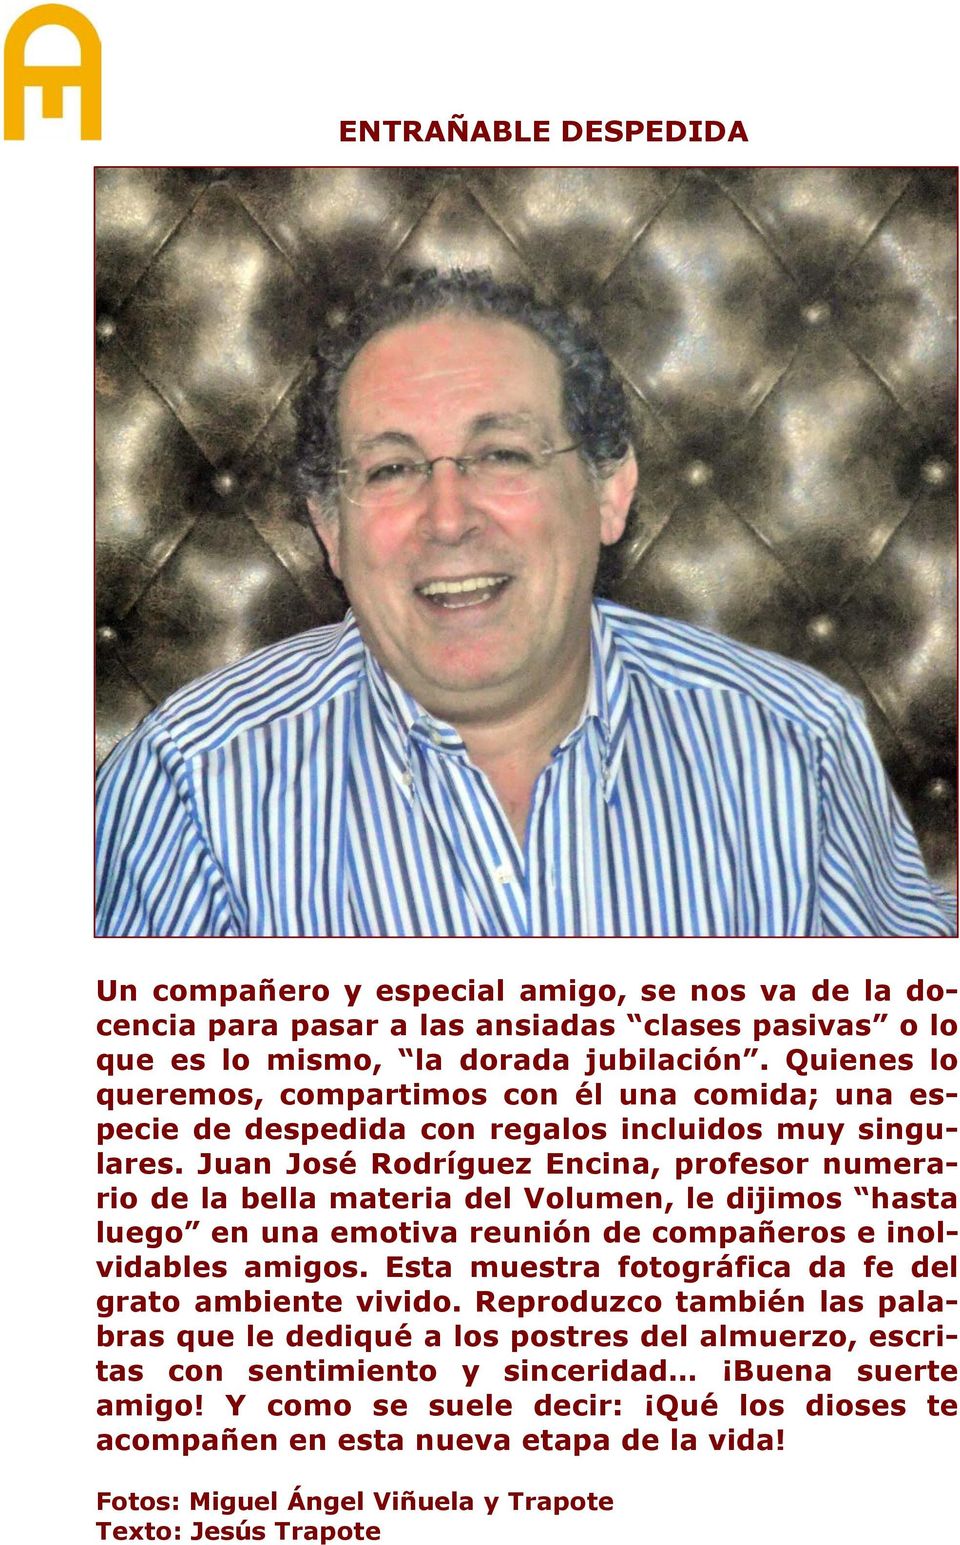 Juan José Rodríguez Encina, profesor numerario de la bella materia del Volumen, le dijimos hasta luego en una emotiva reunión de compañeros e inolvidables amigos.